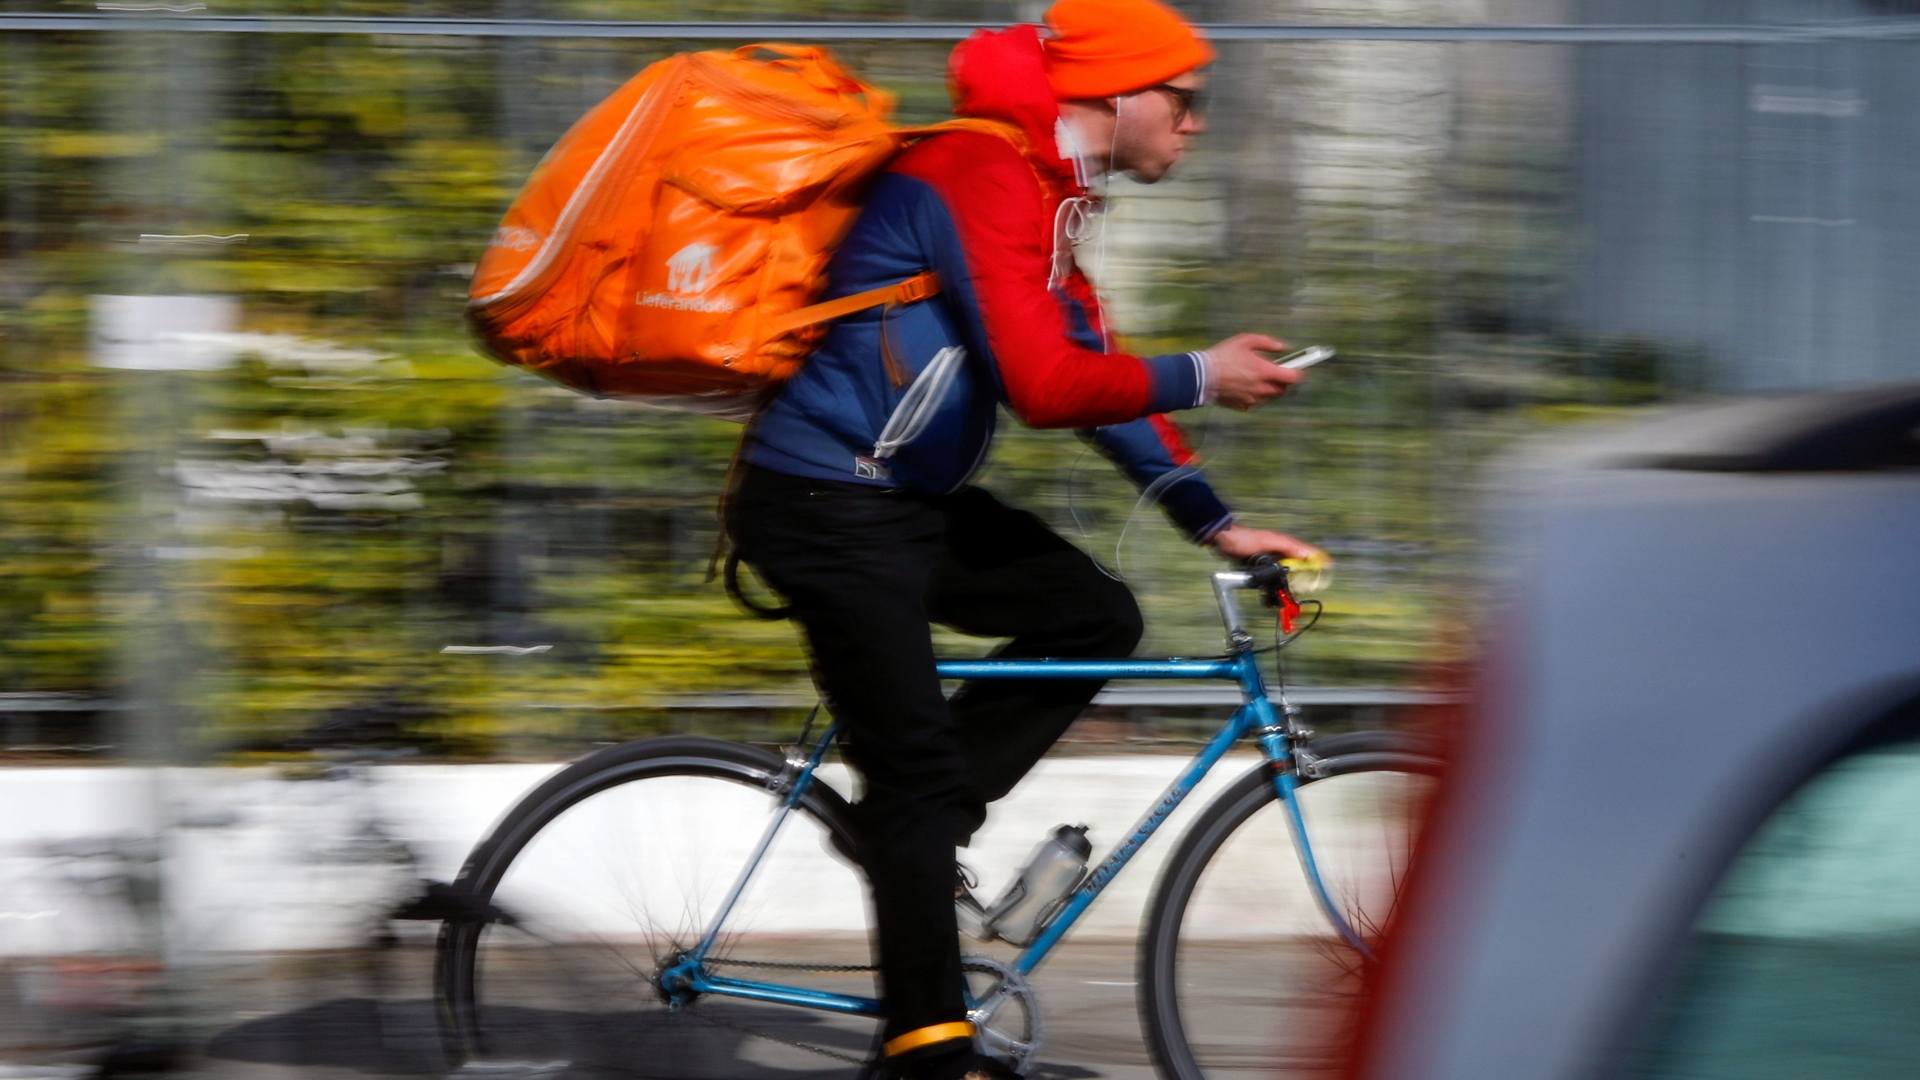 Lieferando-Fahrer auf dem Fahrrad | AFP